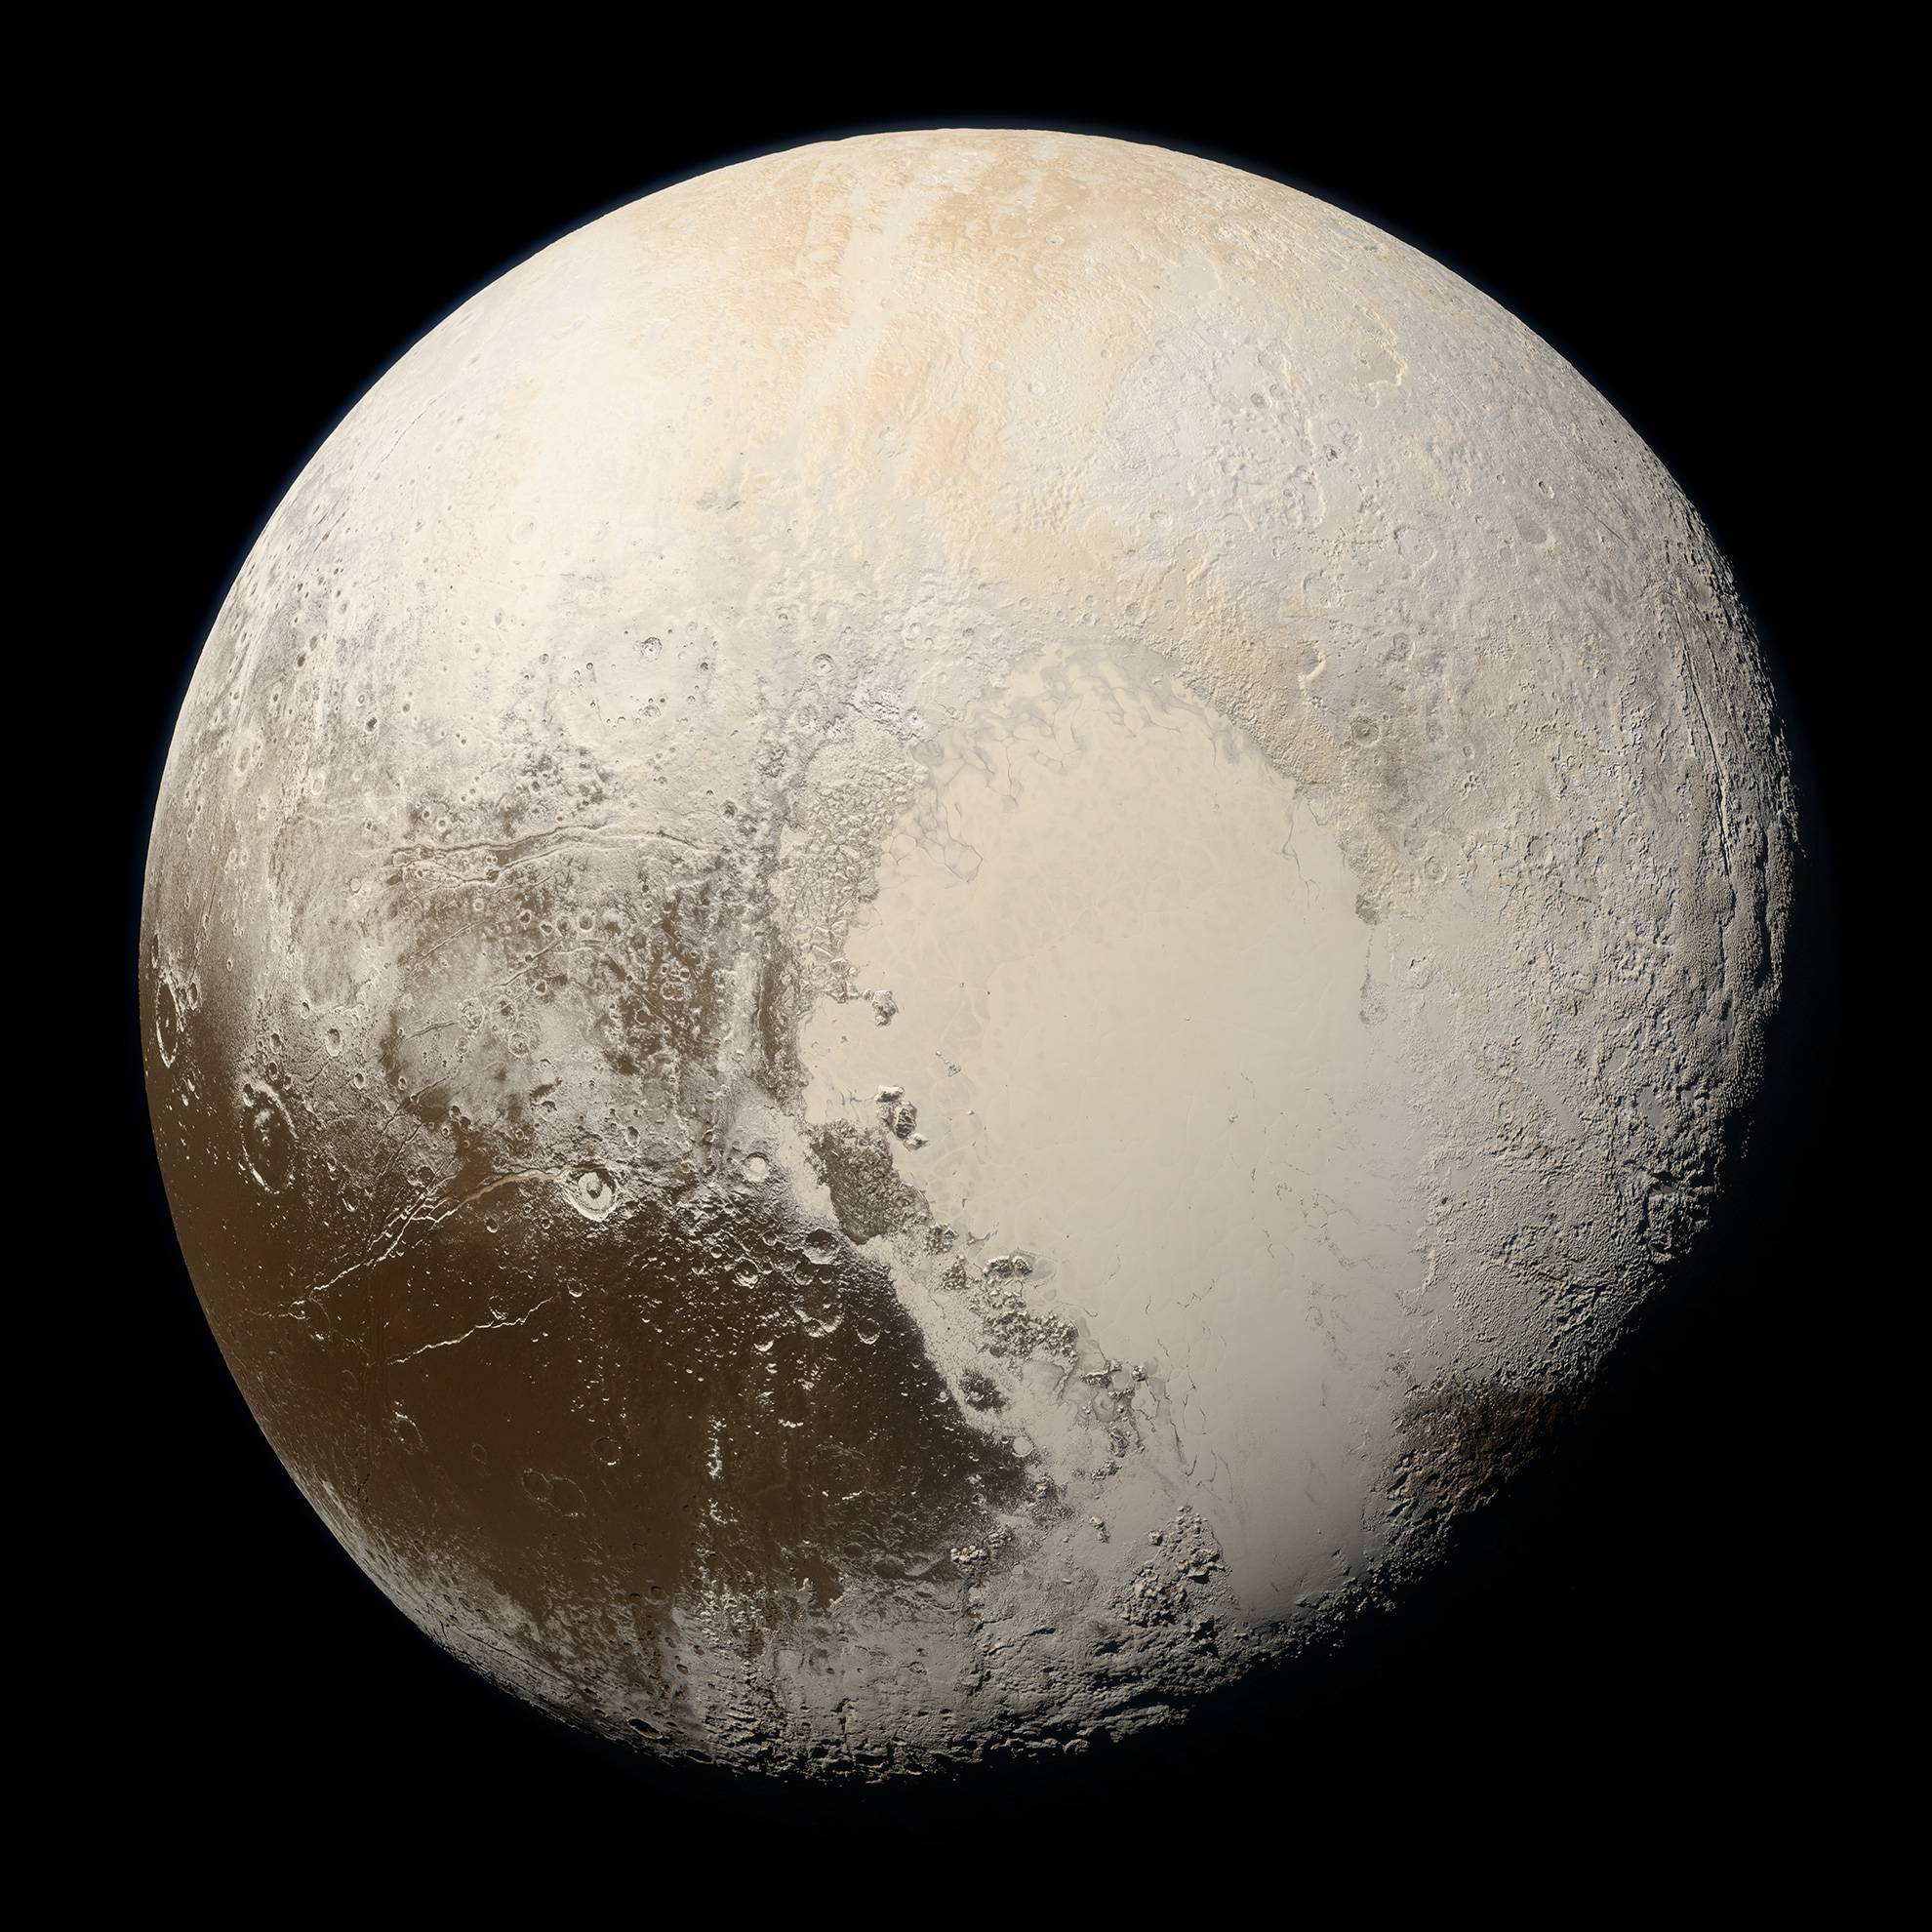 Pluto Type 2